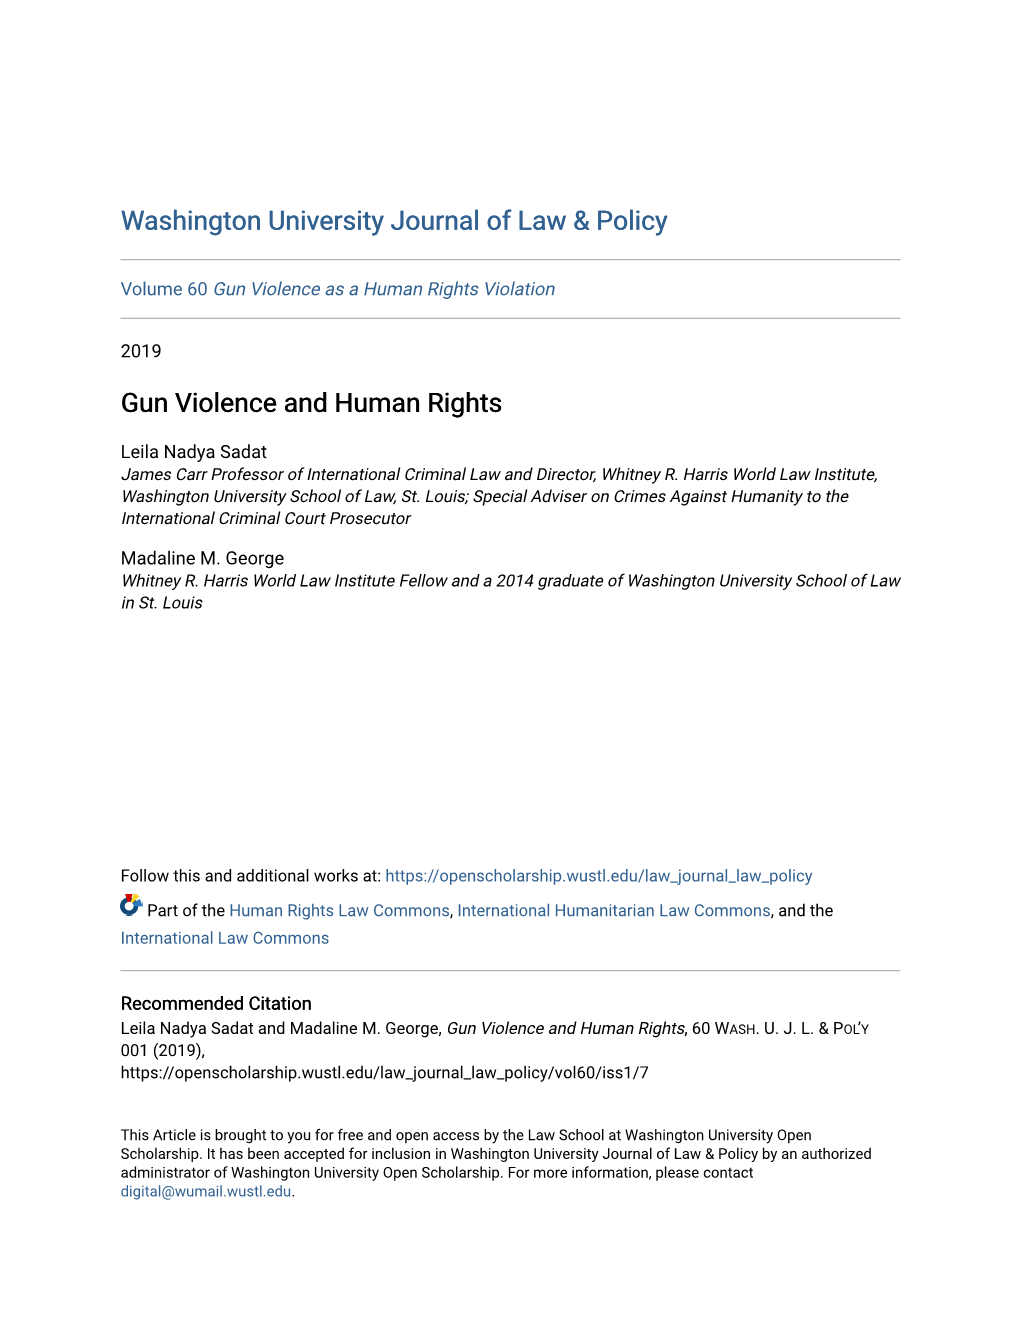 Gun Violence and Human Rights